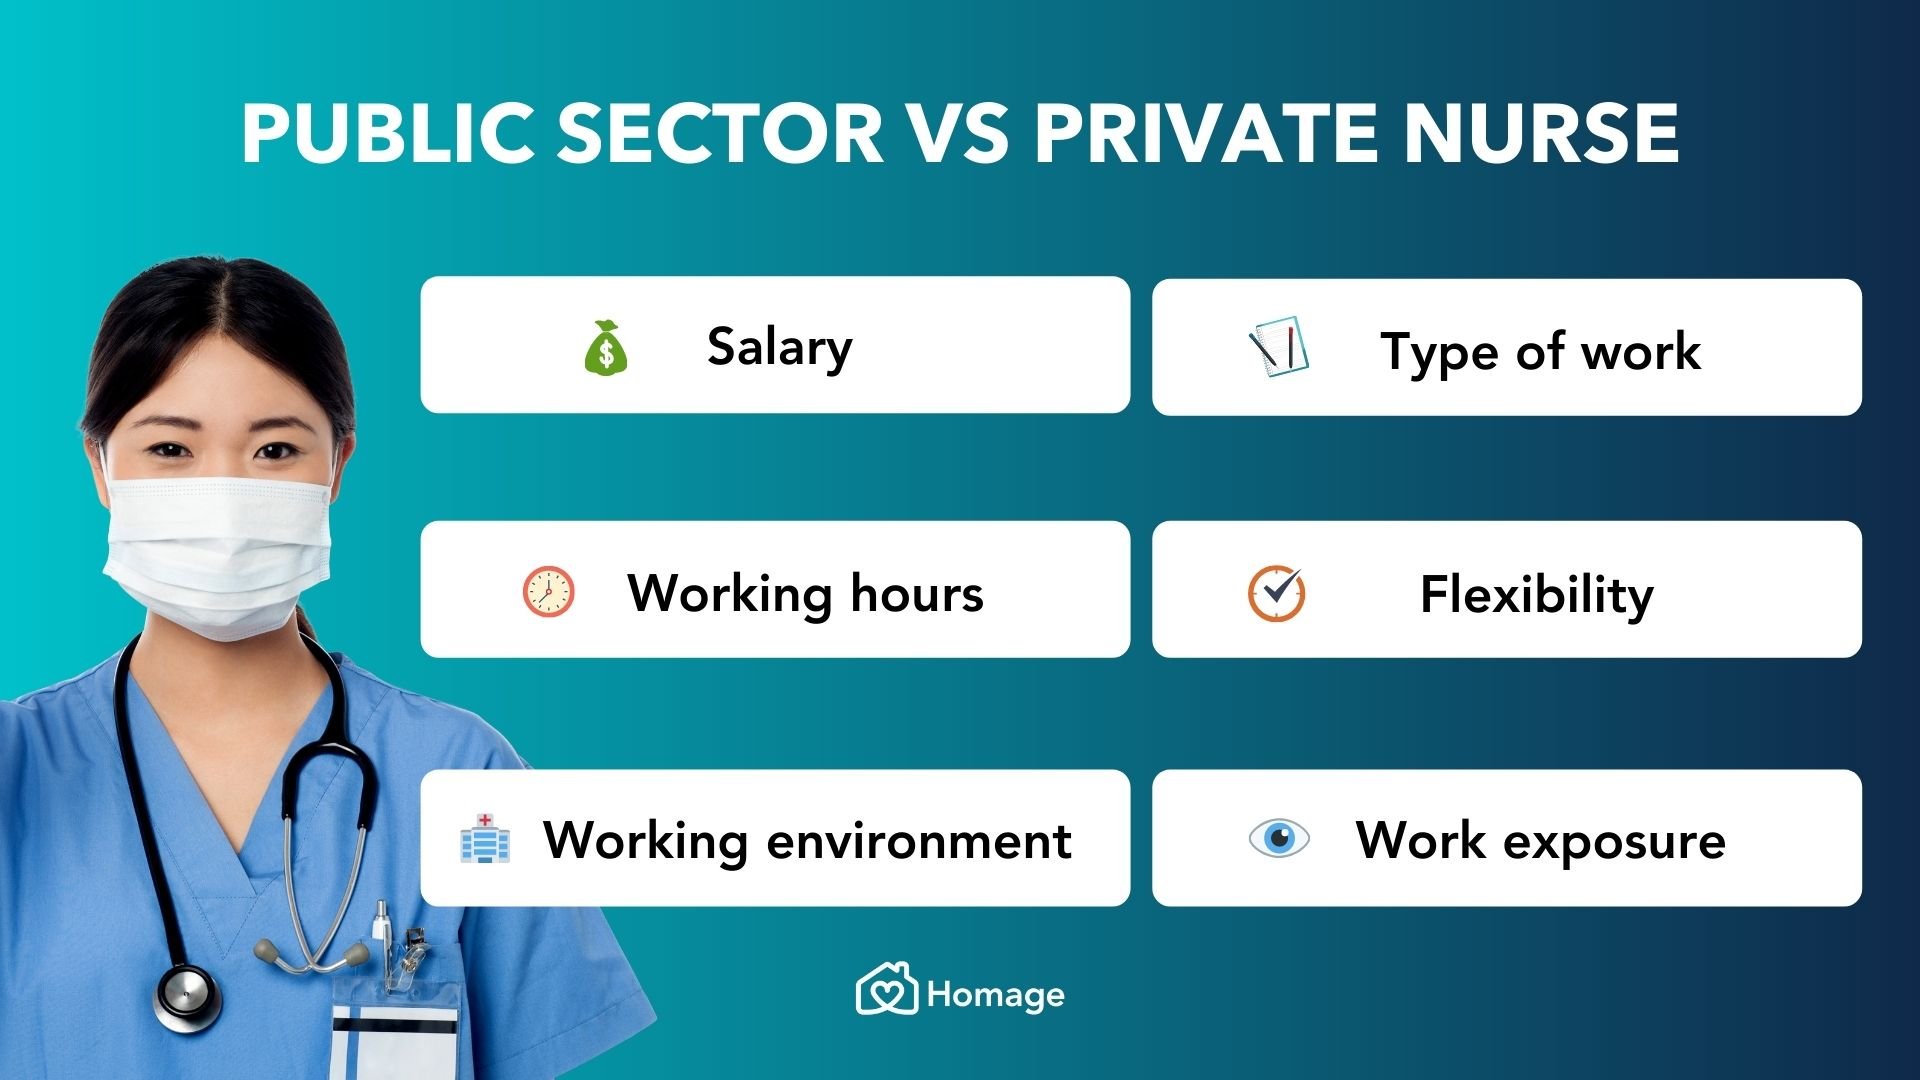 Public sector vs private nurse